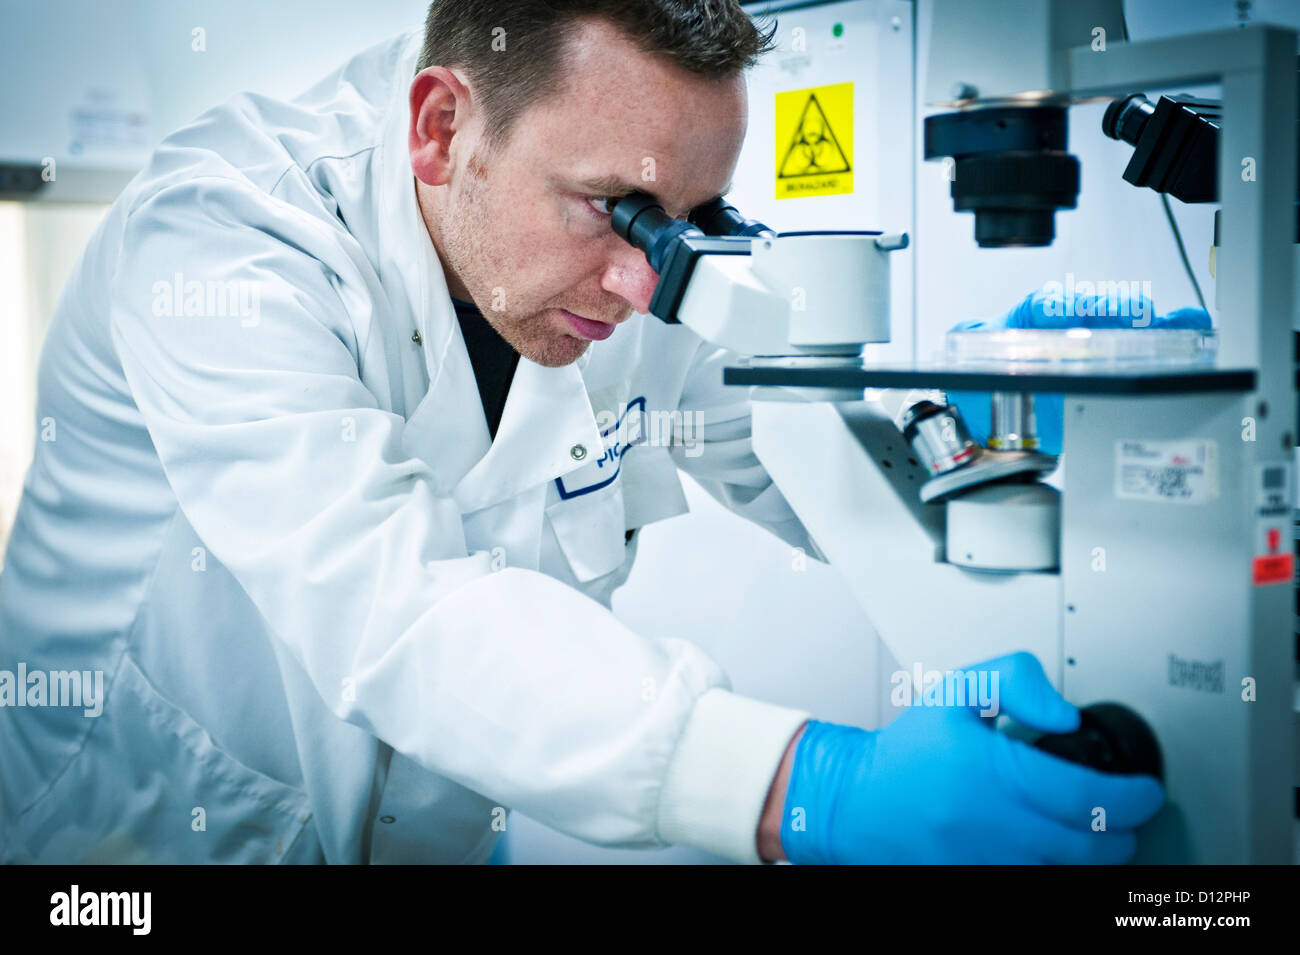 Homme scientifique ou technicien utilise un microscope dans un laboratoire de sciences. Banque D'Images